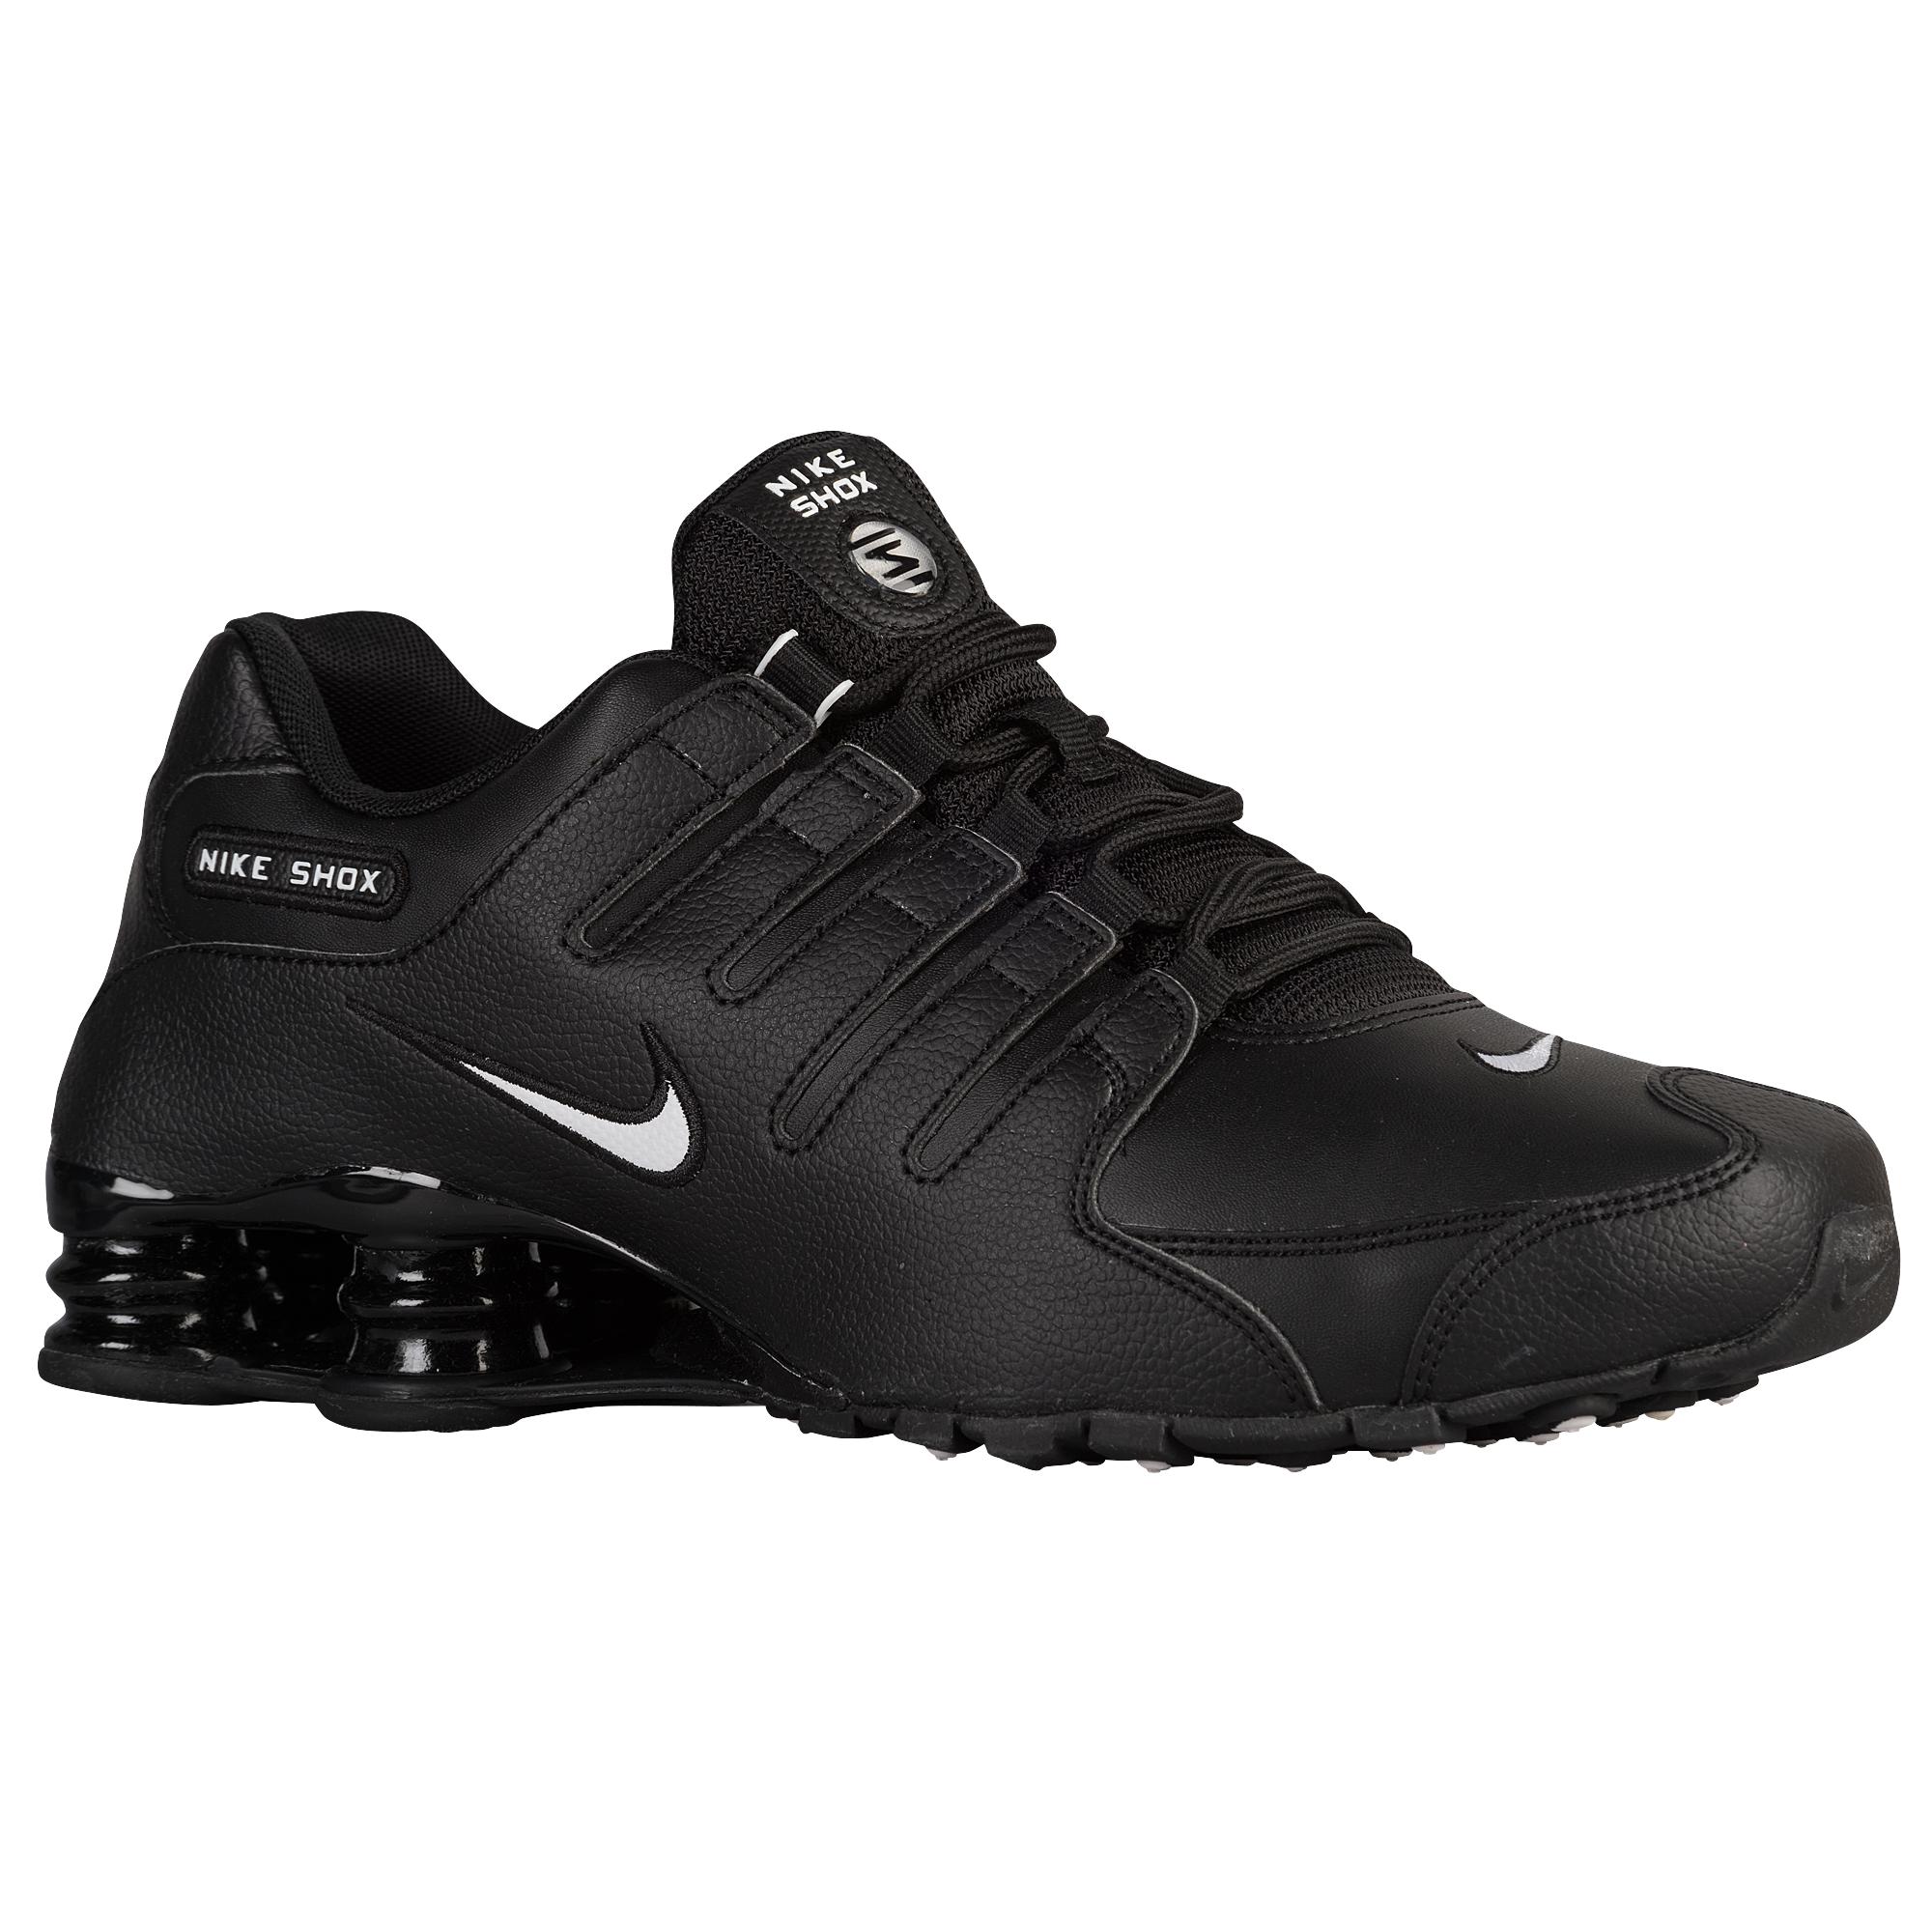 Nike Rubber Shox Nz Running Shoes in Black/White (Black) for Men - Lyst